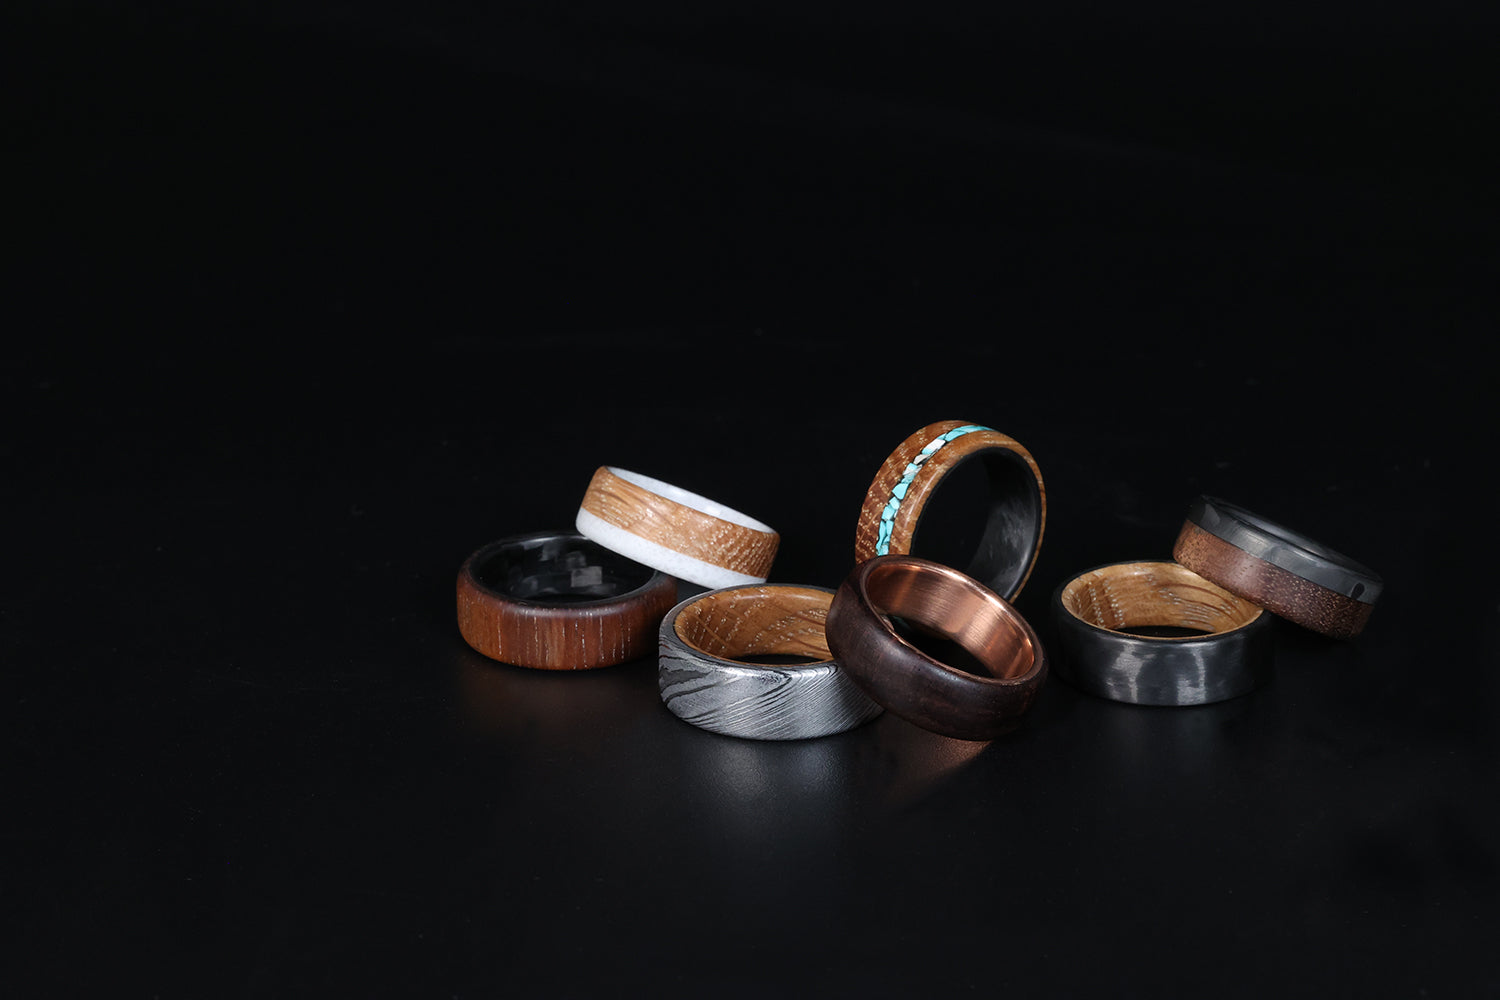 Custom Wood Rings  Wooden Wedding Rings